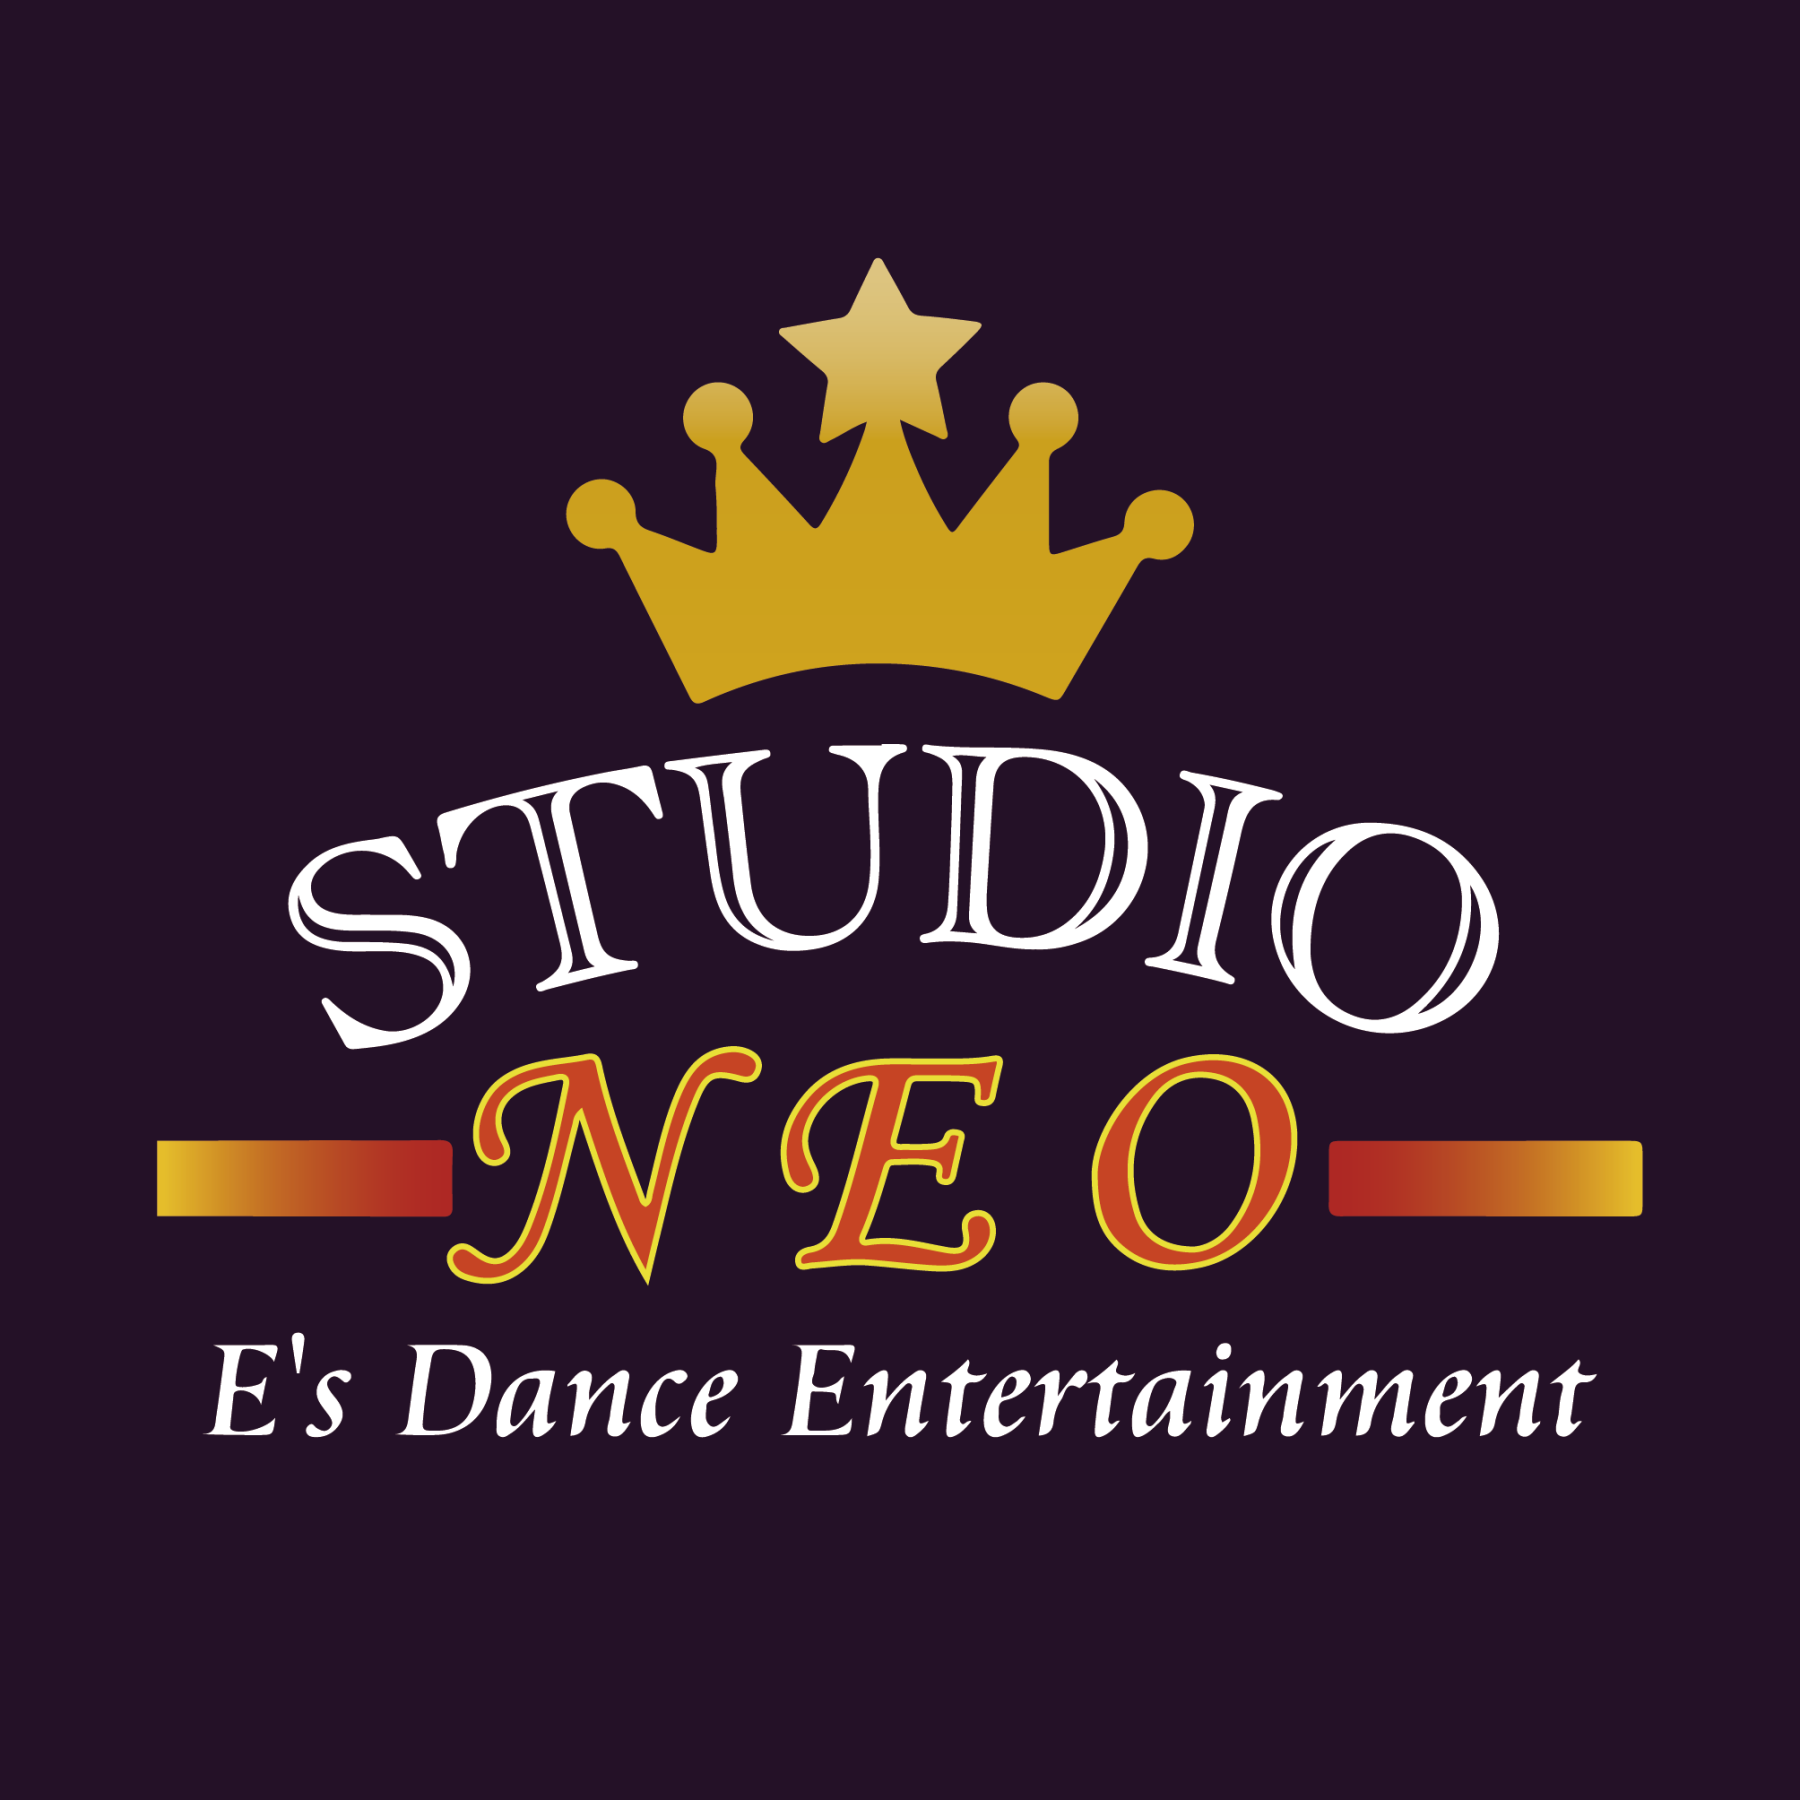 ダンス教室 東松山のキッズダンス キッズバレエ教室スタジオE's Dance Entertainment STUDIO-NEO